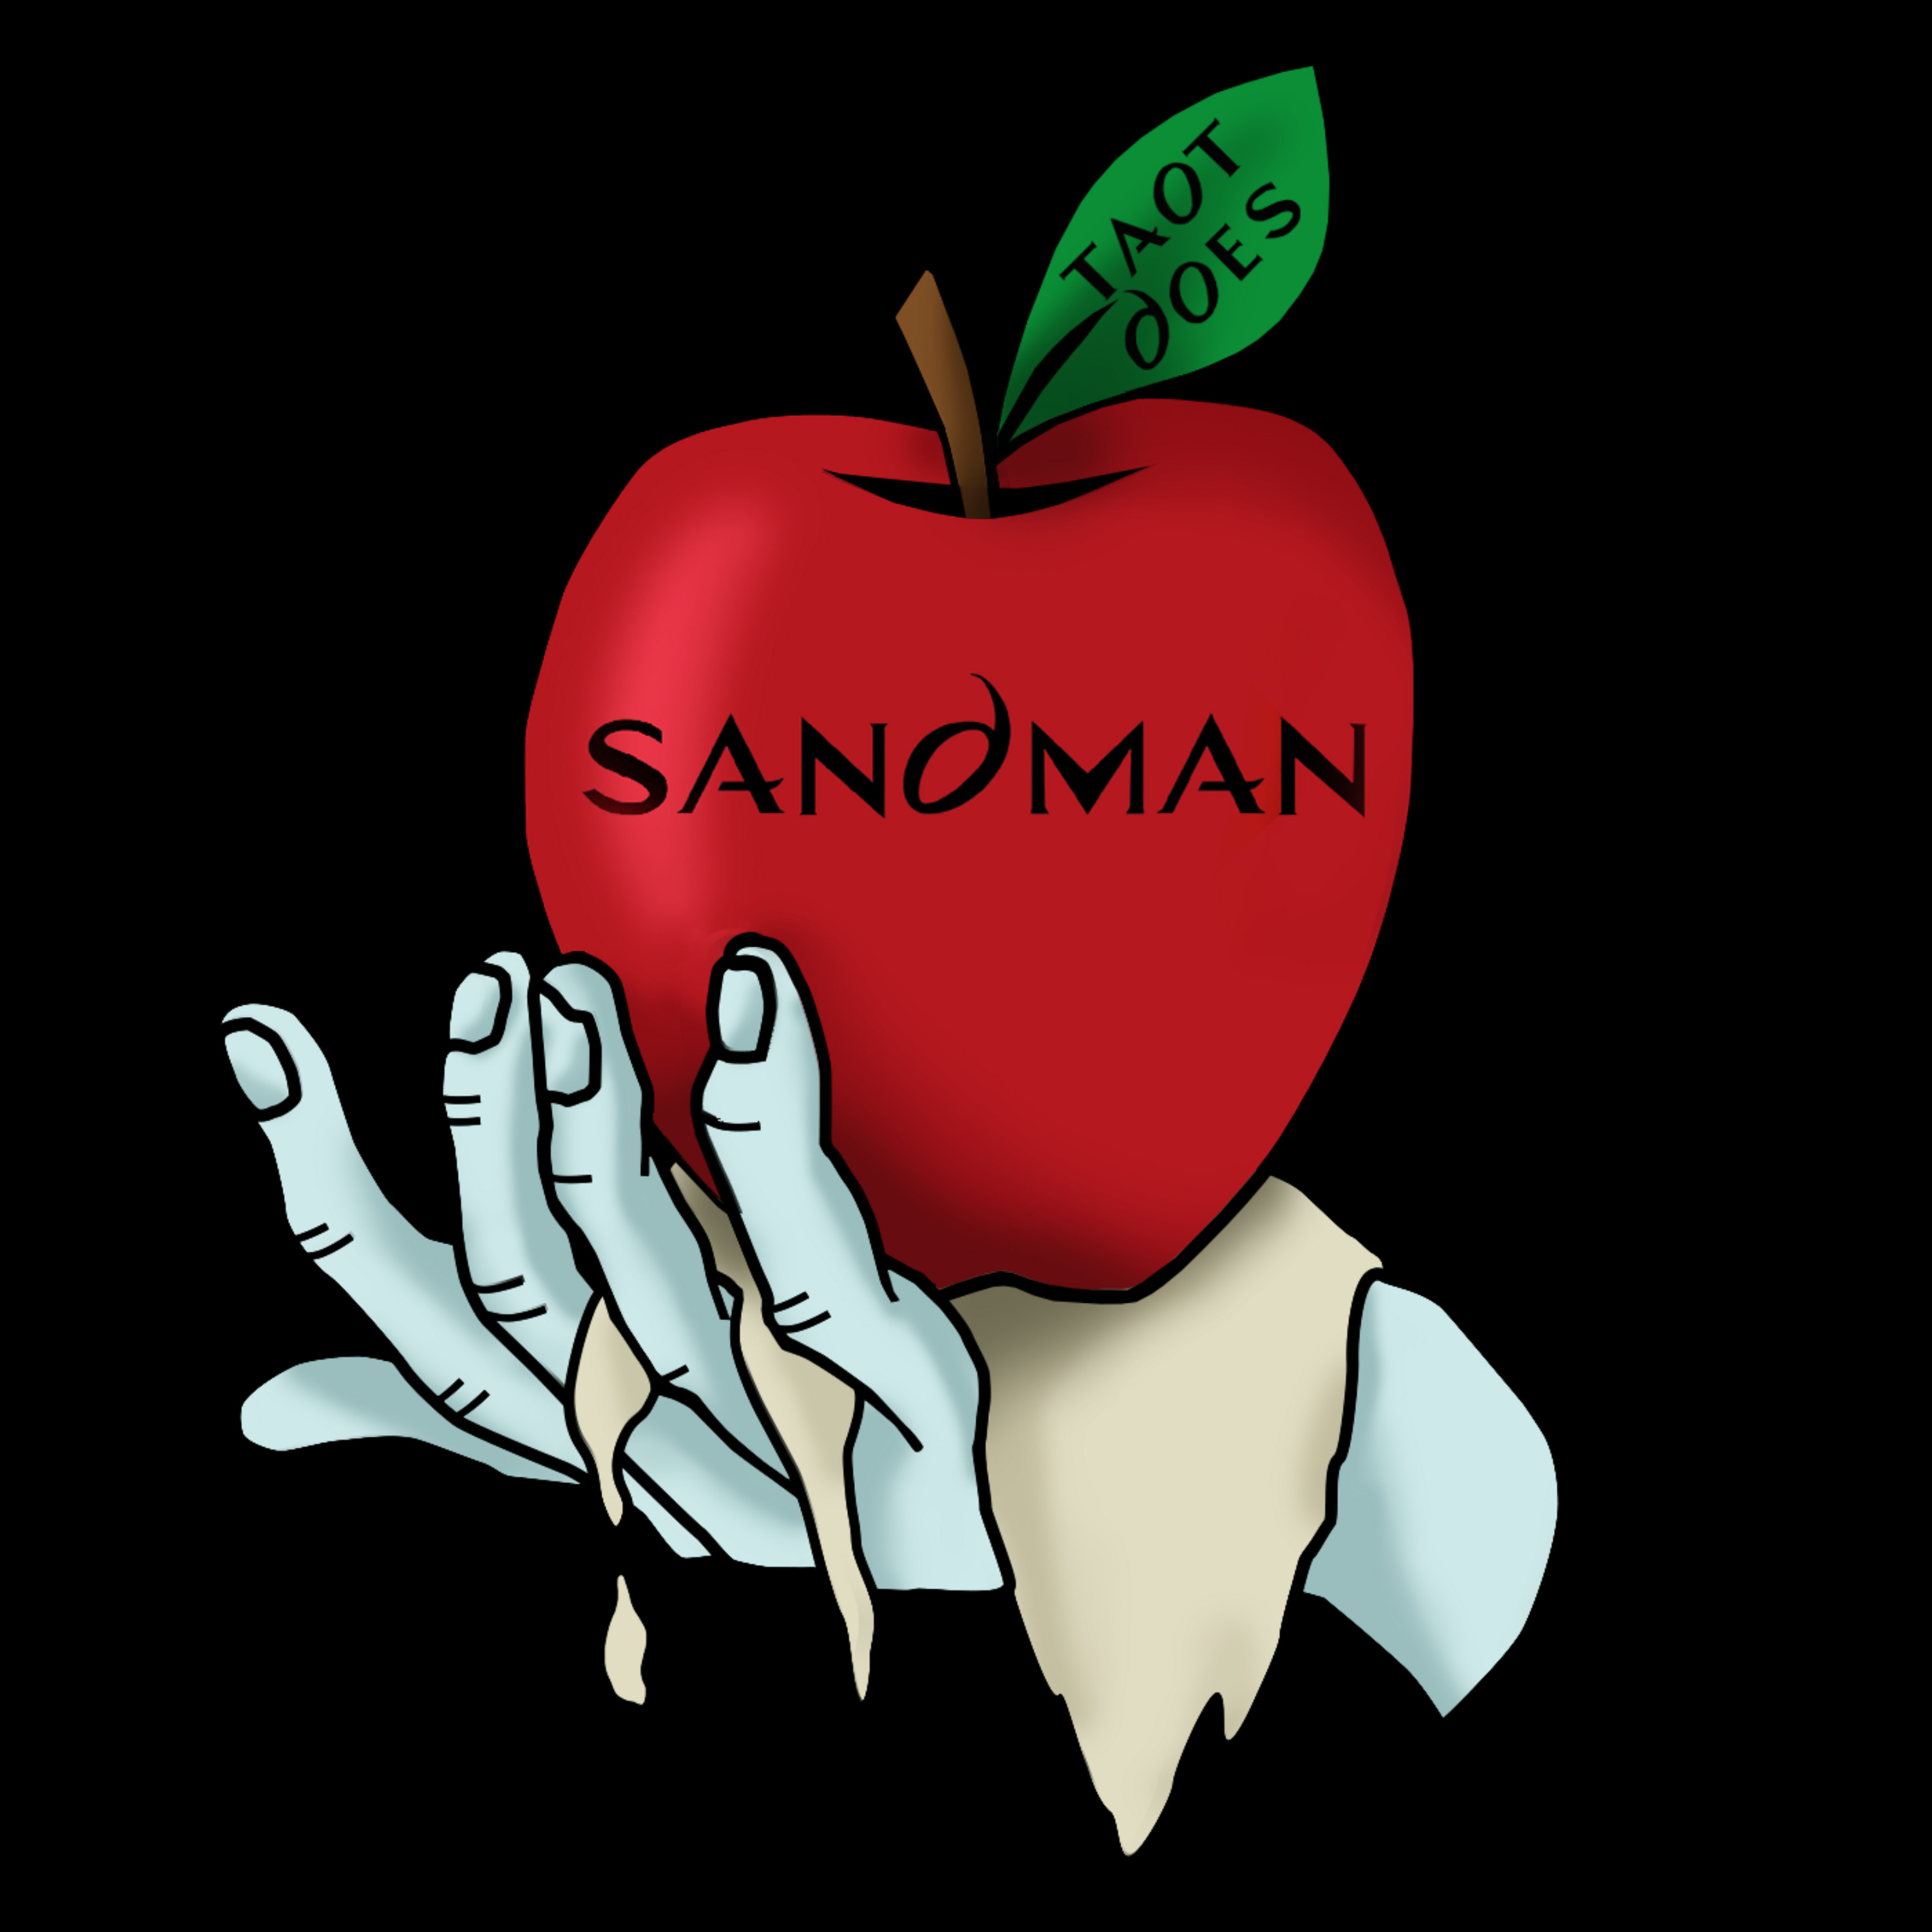 Episode 135: TAOT The Sandman S1E02